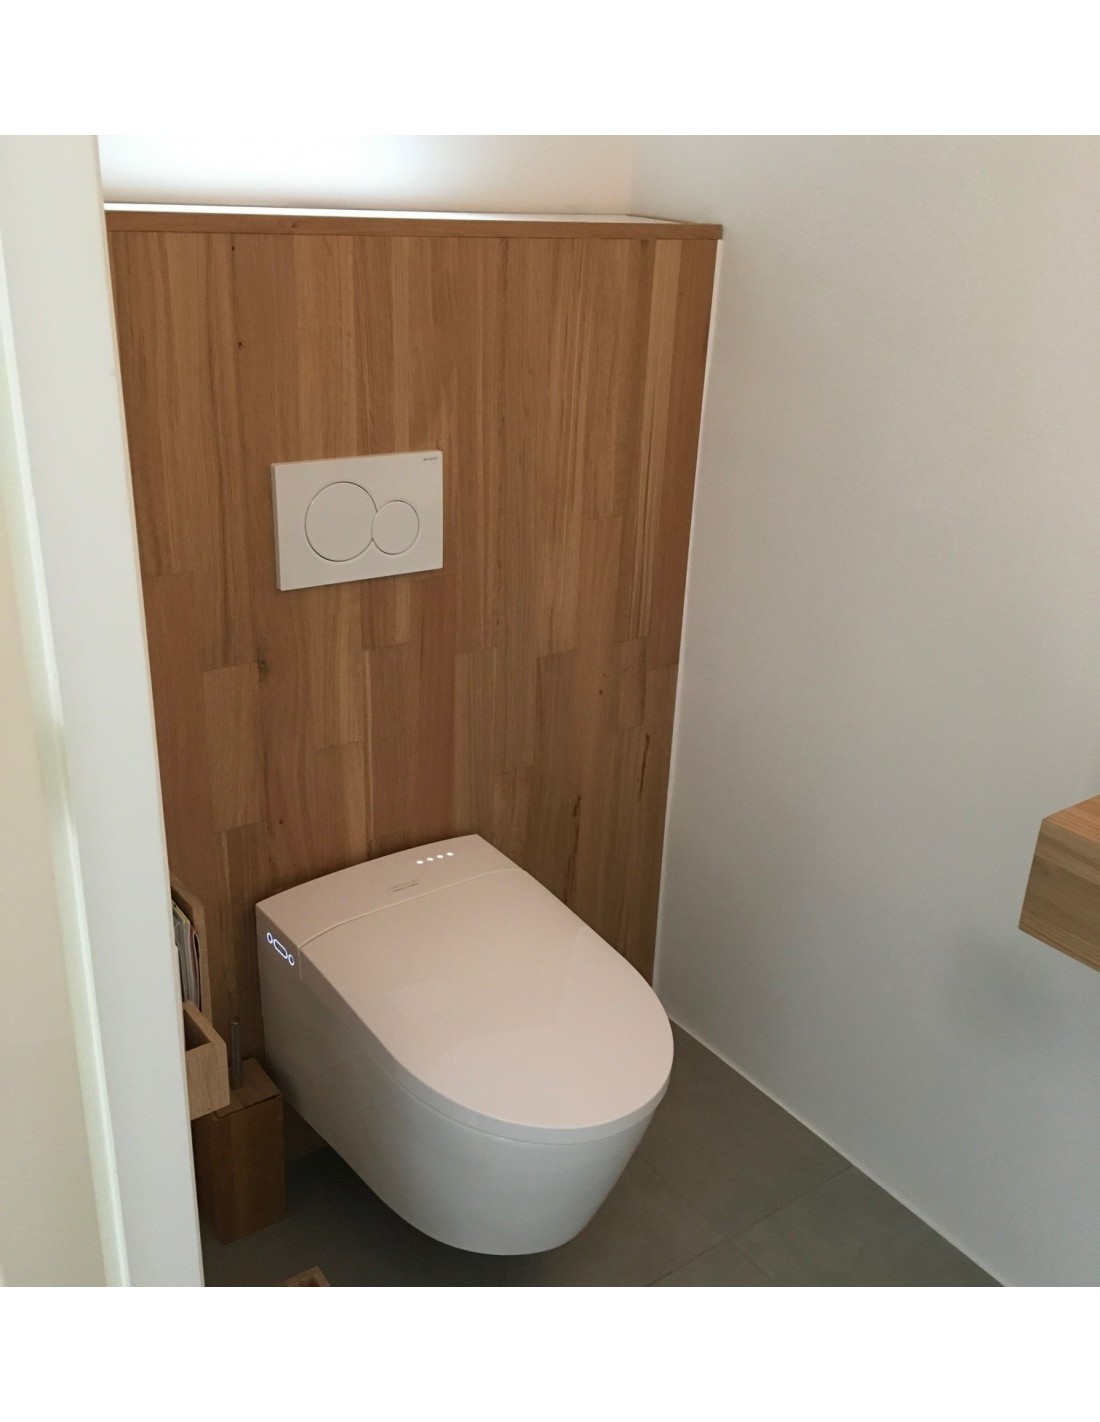 WC Japonais Suspendu Crystal Plus - WC Lavant